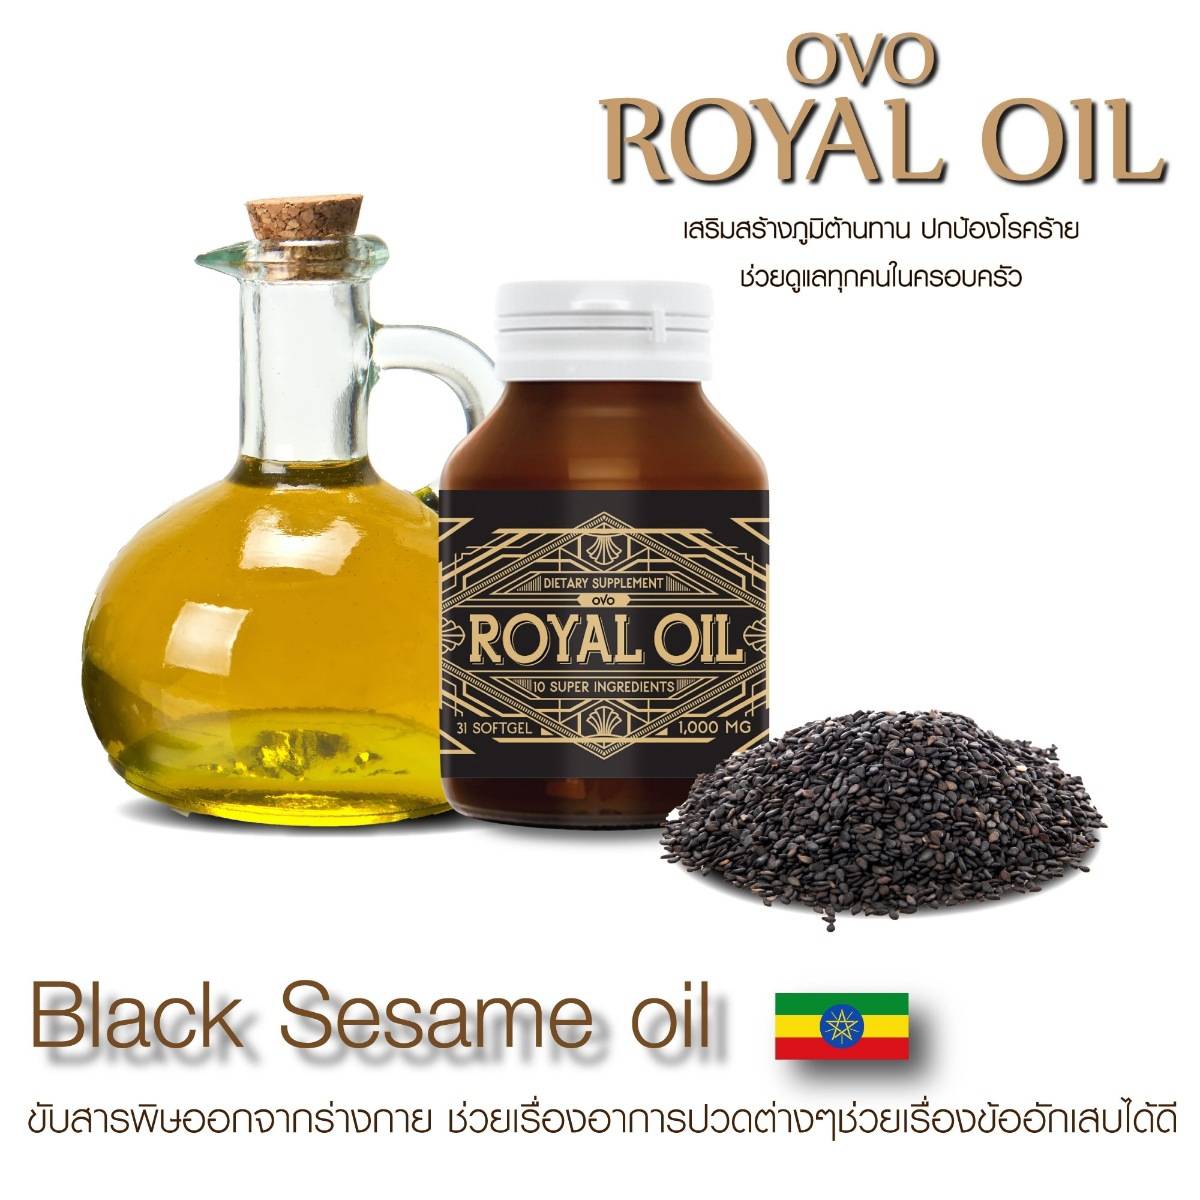 ส่วนประกอบ royal oil รอยัลออย 3